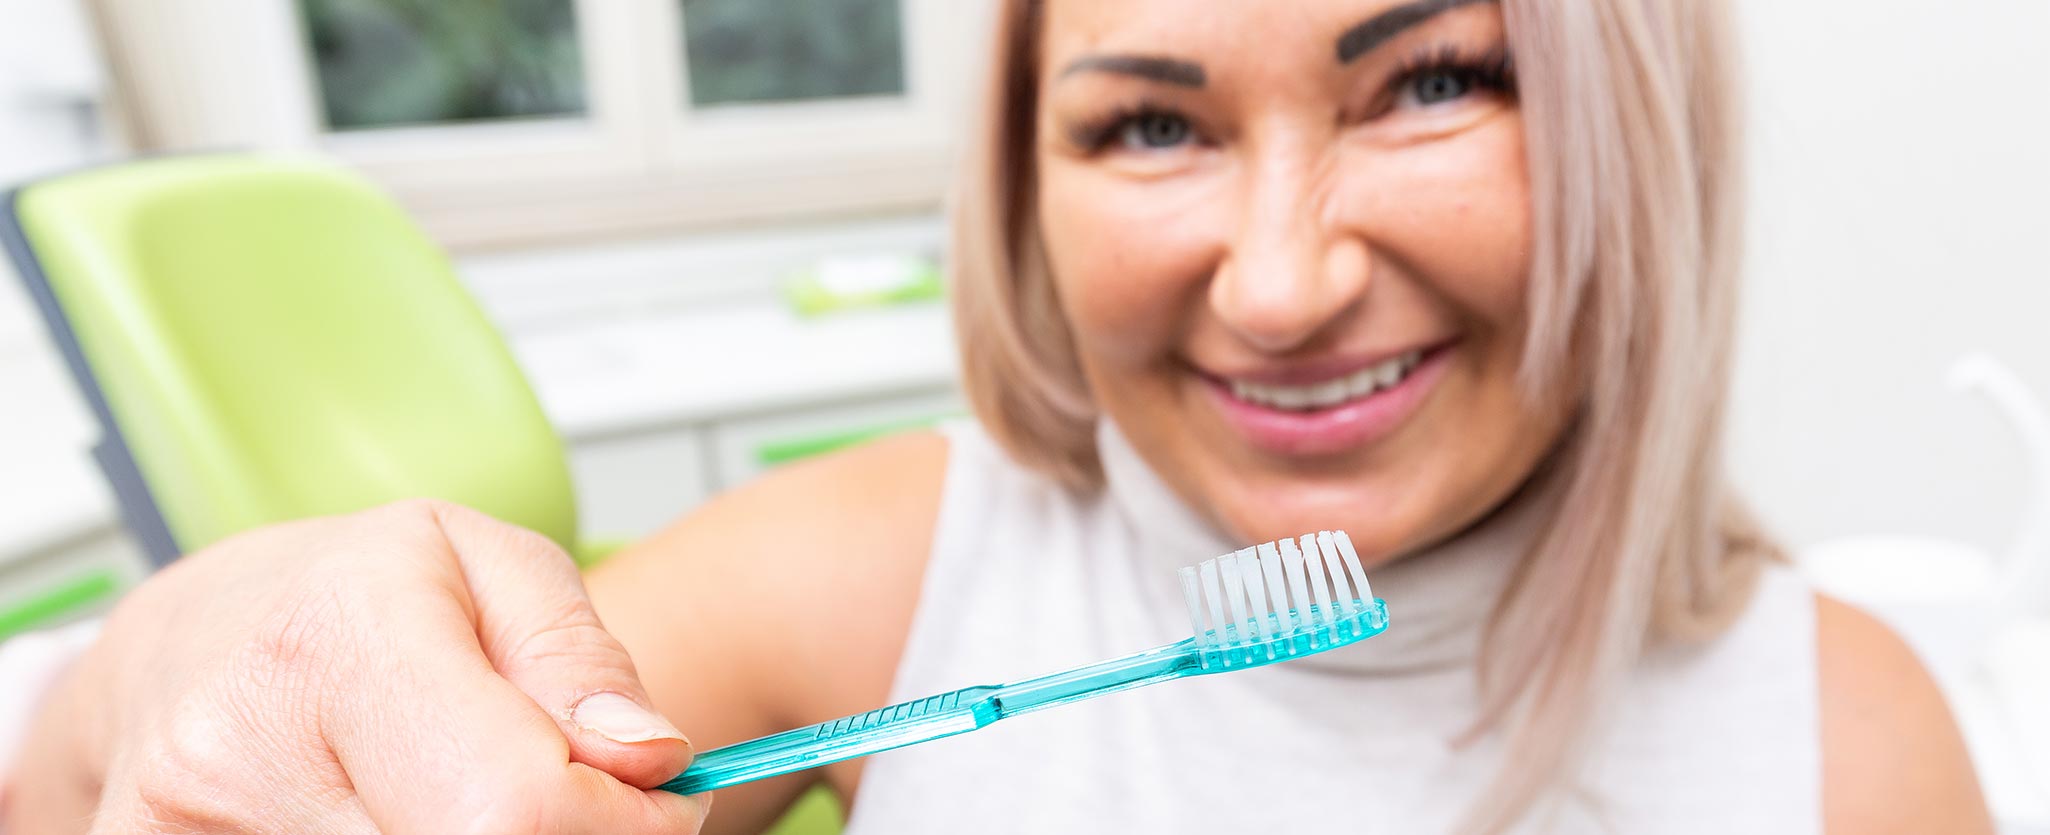 Zahnarztpraxis Totolici - lachende Patientin mit Zahnbürste